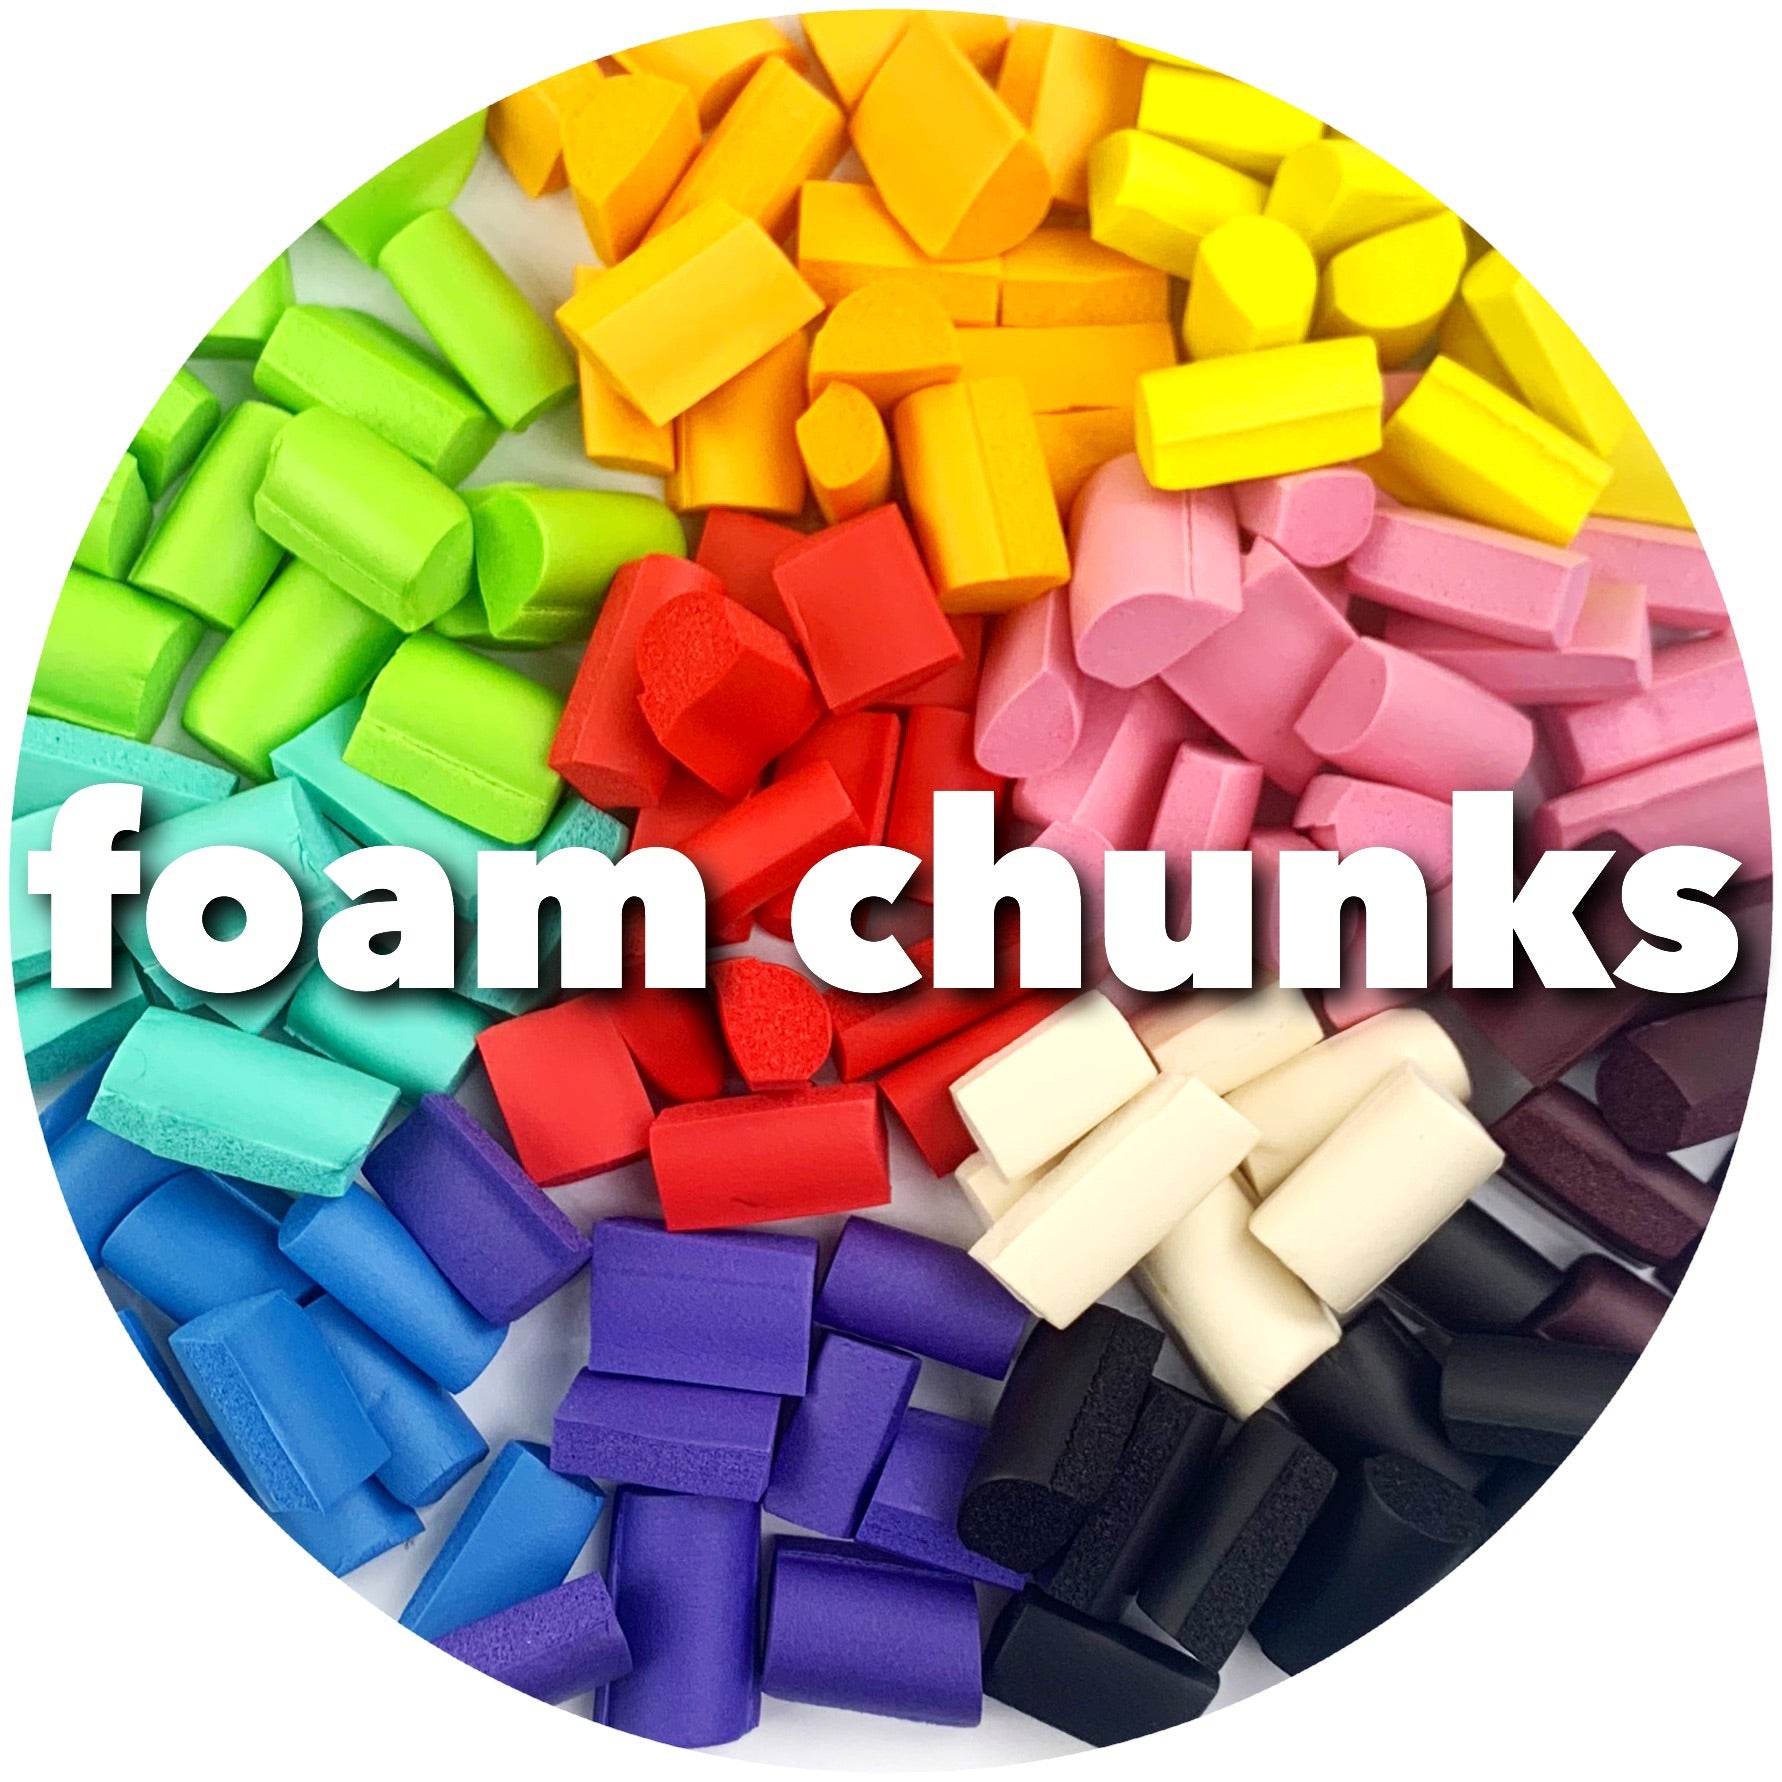 Foam Chunks for Slime